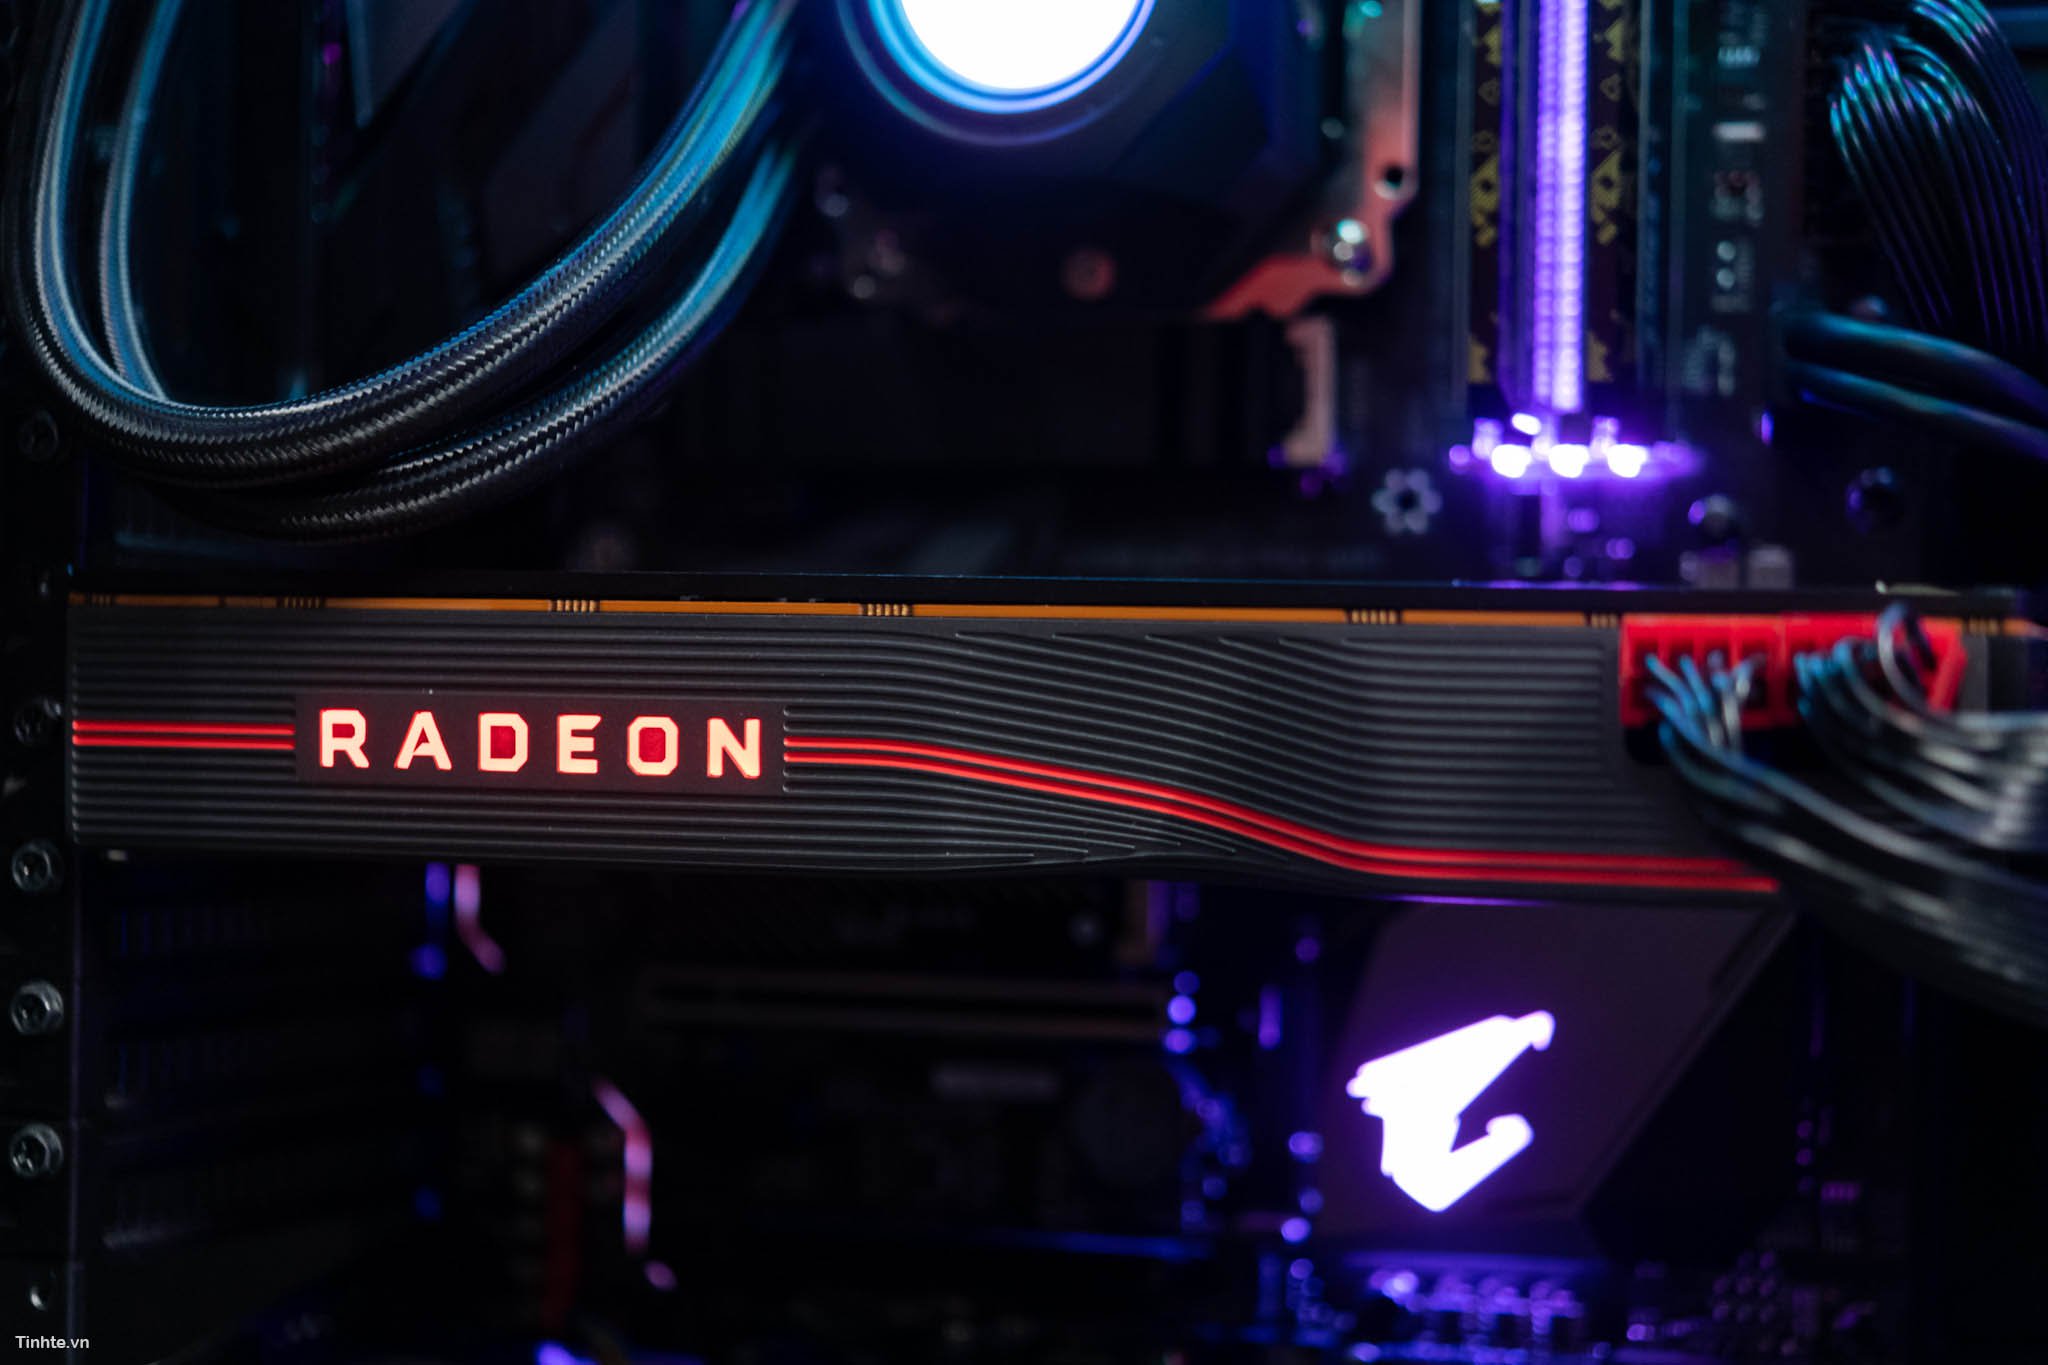 Trải nghiệm AMD RX Radeon 5700 XT: chơi tốt nhiều game ở 2K, xung cao hơn, ít ăn điện hơn đời trước - Hình 10